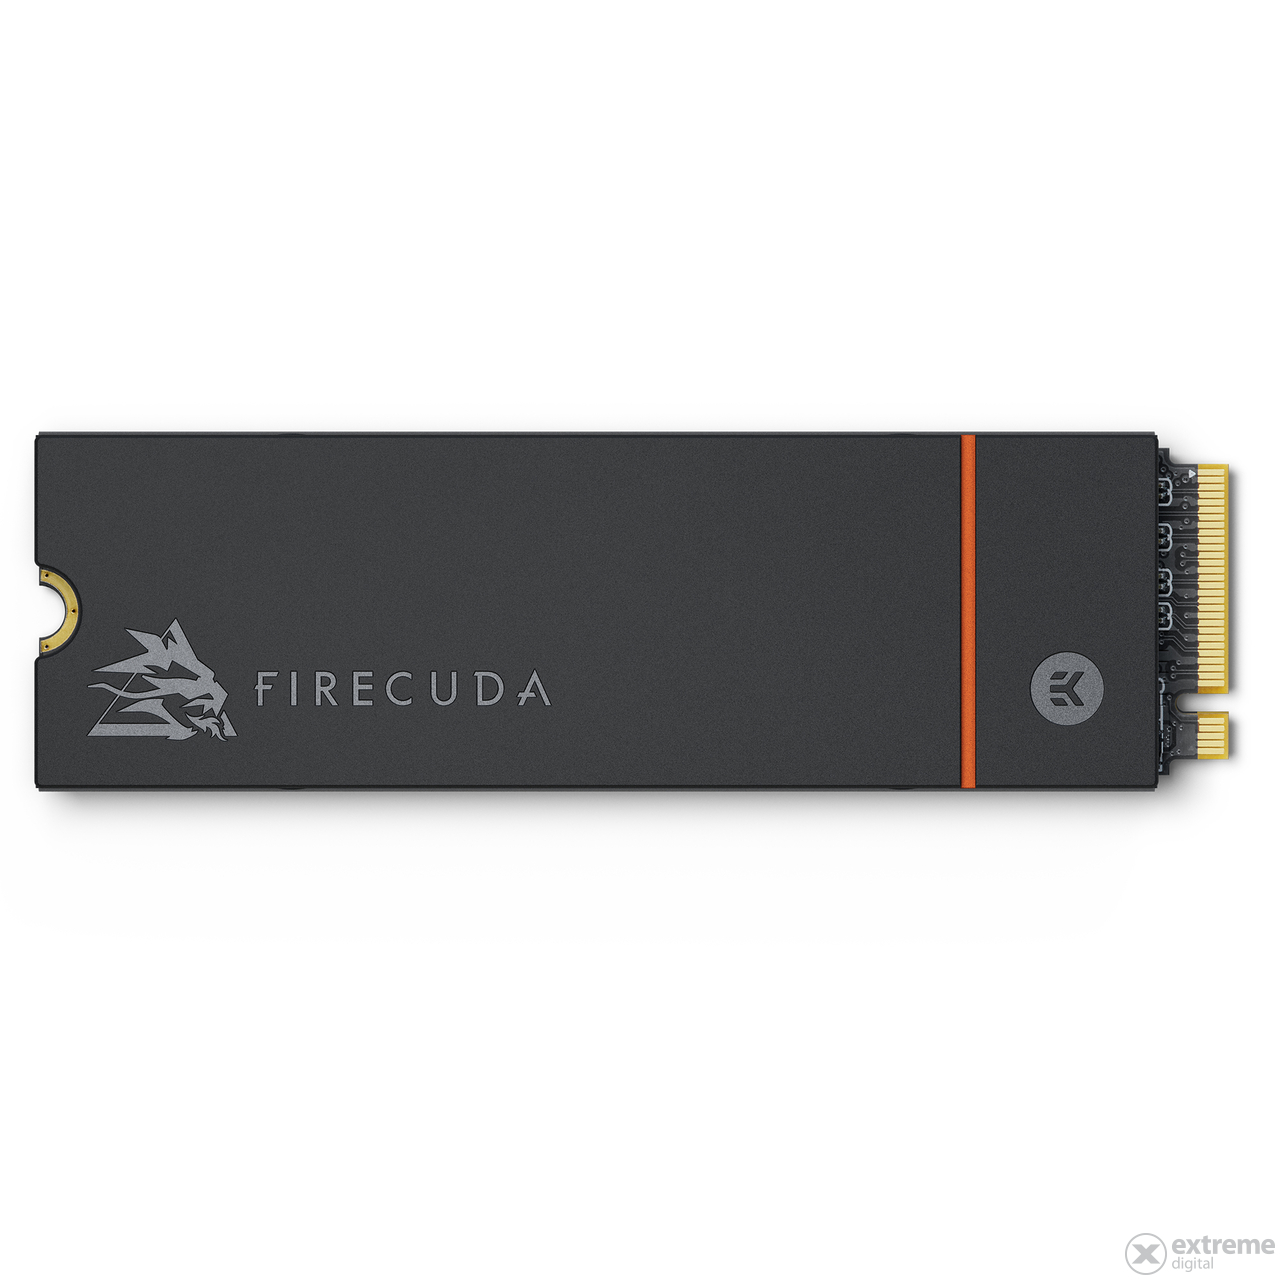 Seagate FireCuda 530 Heatsink Gen.4 SSD disk, 2TB, NVMe, M.2.